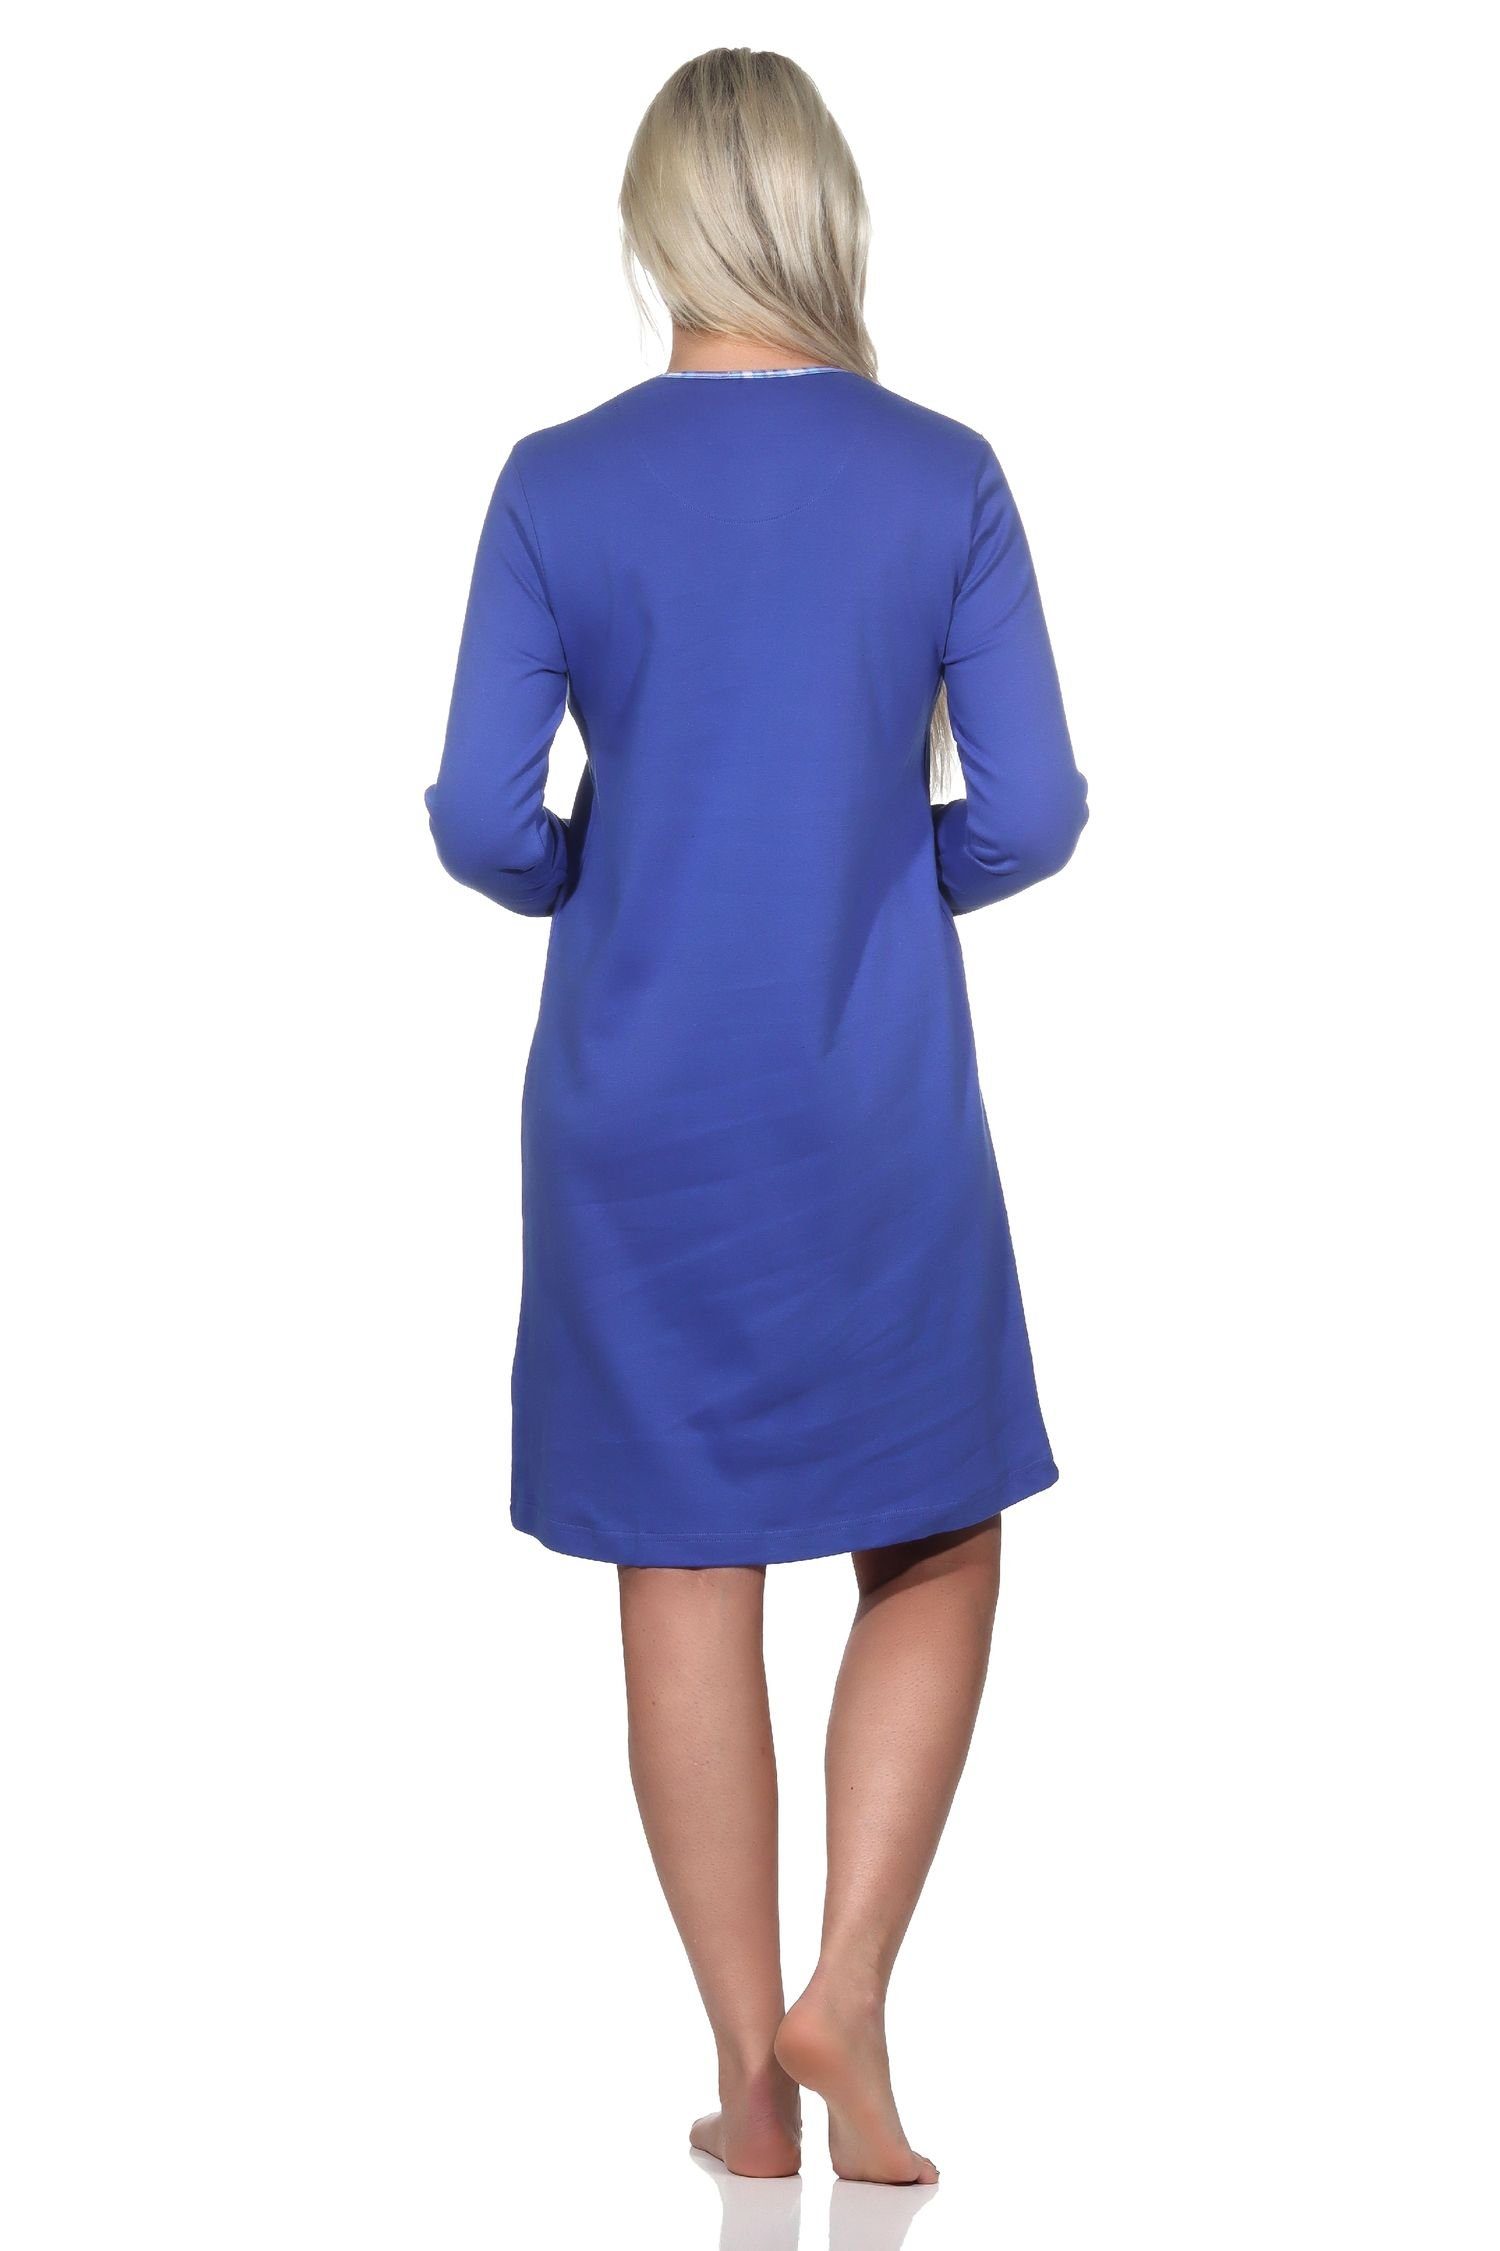 Kuschel langarm Nachthemd Normann in Nachthemd Qualität blau Interlock Normann Damen